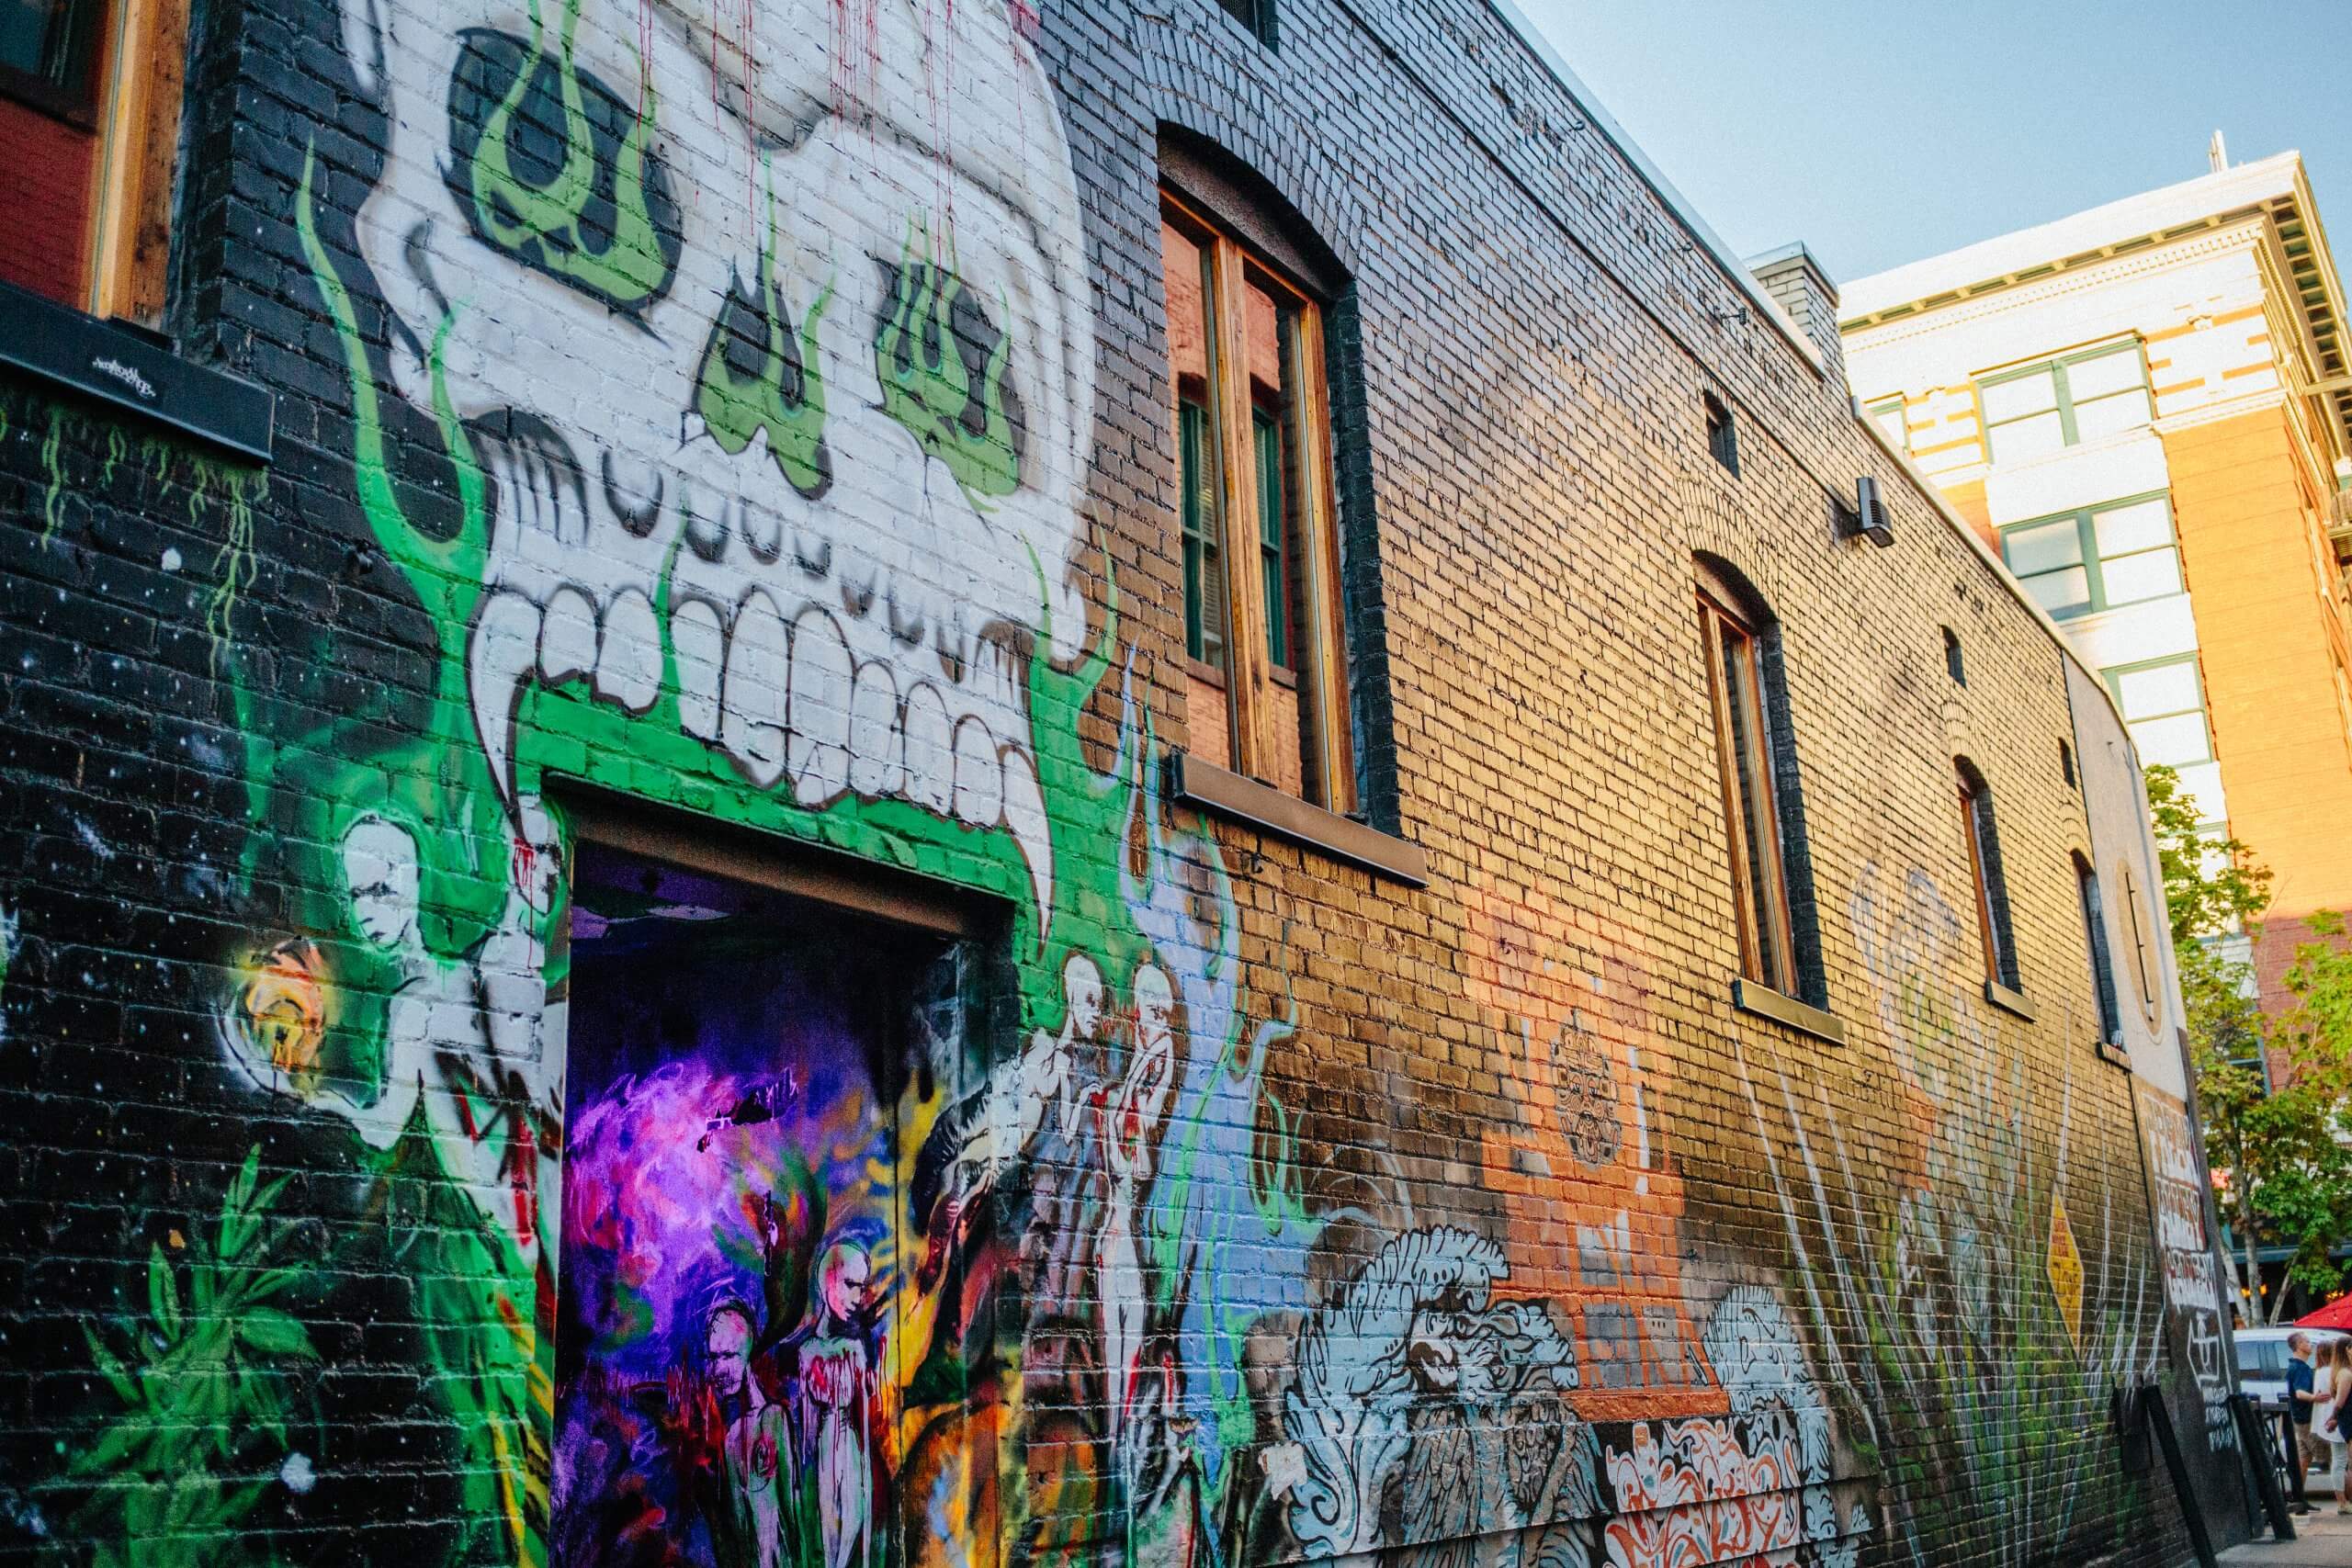 artistic graffiti on a brick wall in Freak Alley